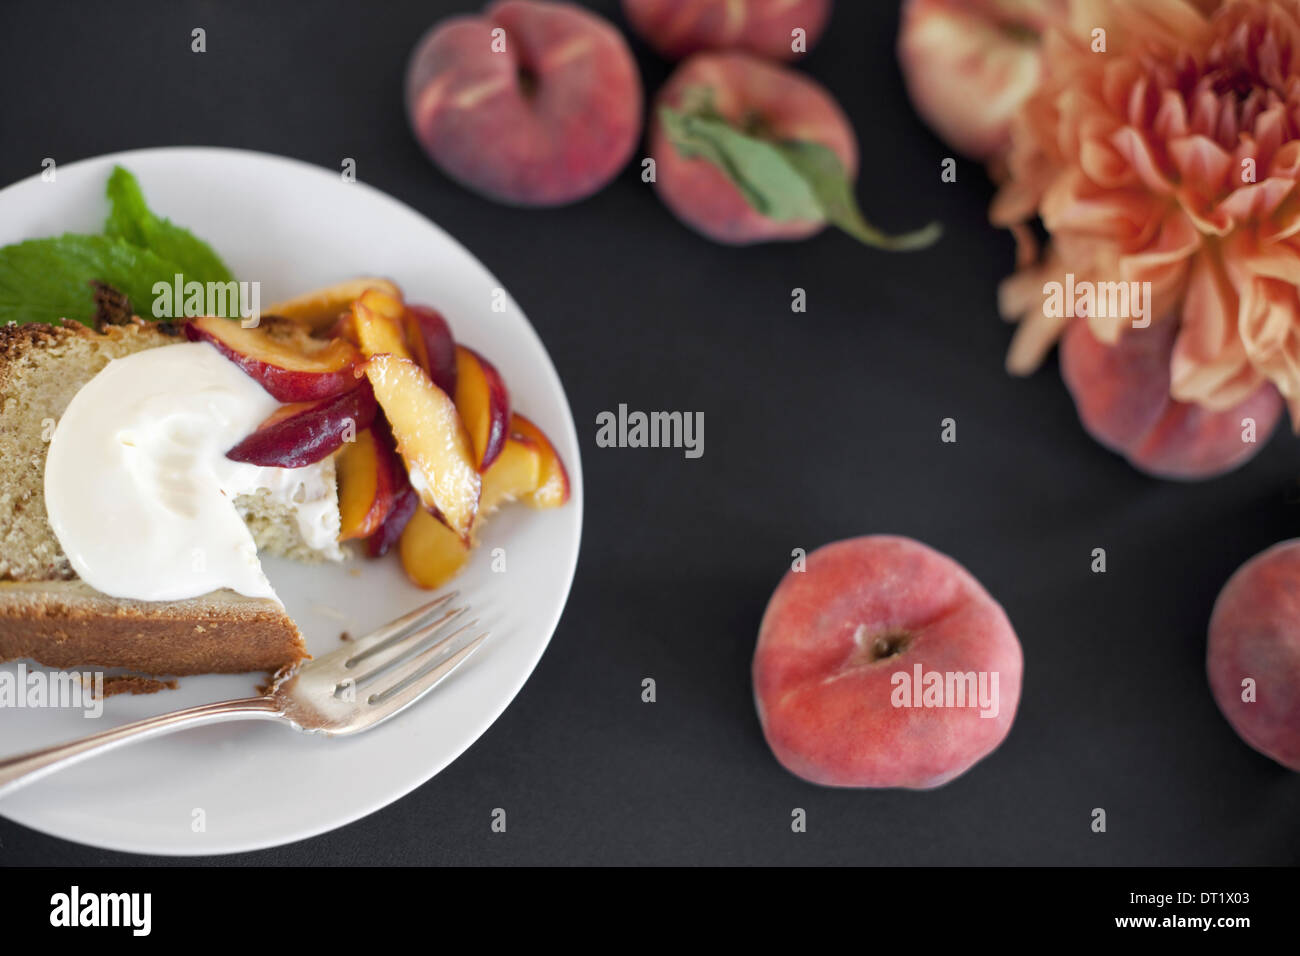 Una tabella visualizzata dalla testa di frutta pesche e fiori una piastra con la torta di frutta fresca e creme fraiche una forcella Dessert Foto Stock